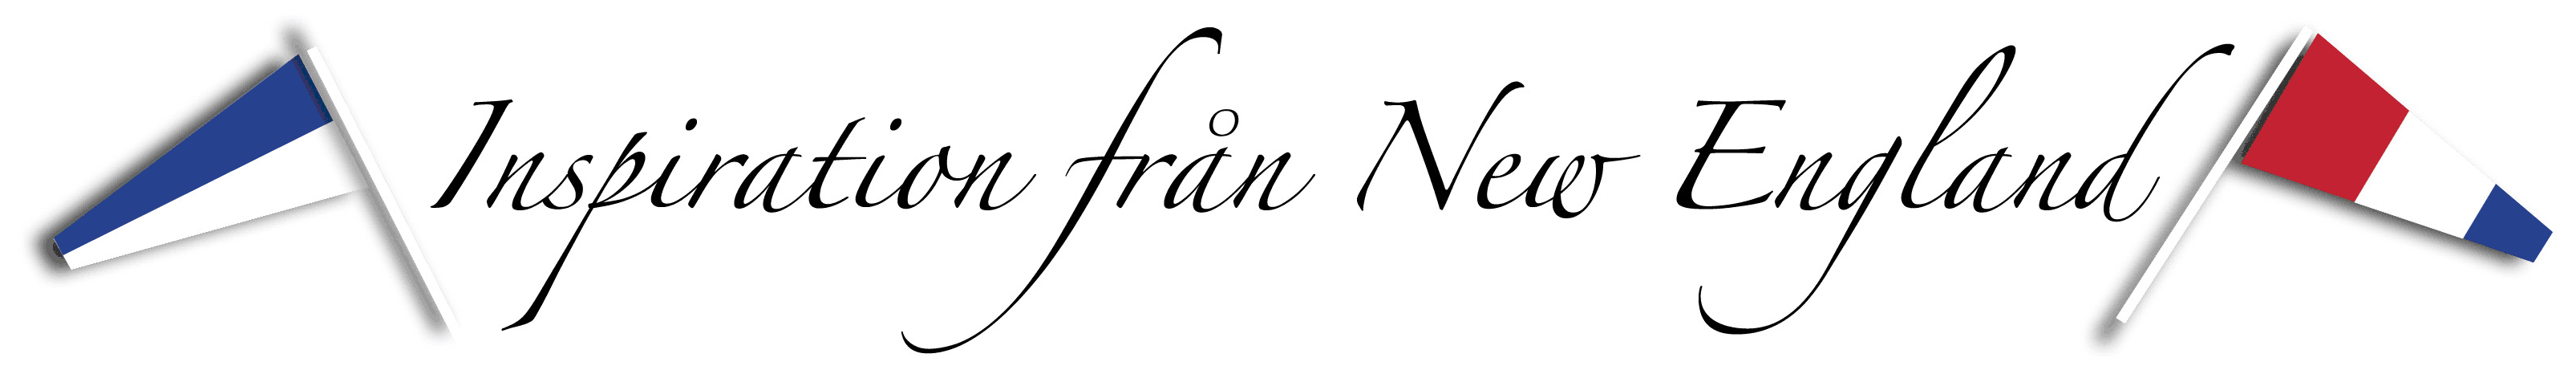 I.F.N.E.logo